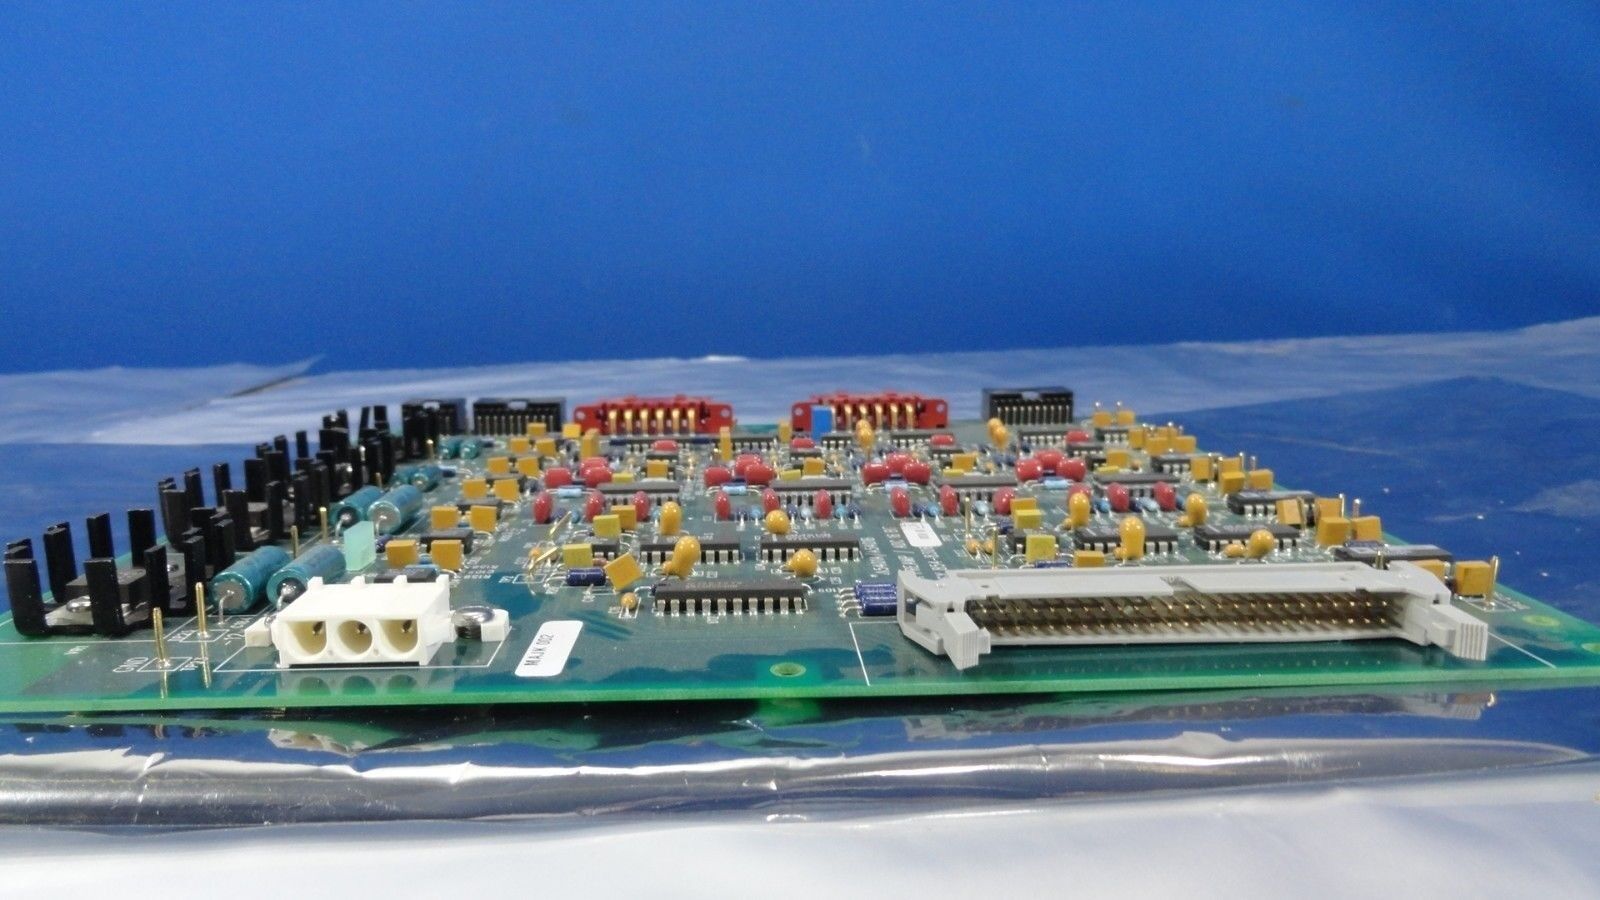 ASML 854-8306-008B Circuit Board PCB AFA Preamp / ADC 16 Bit Used Working